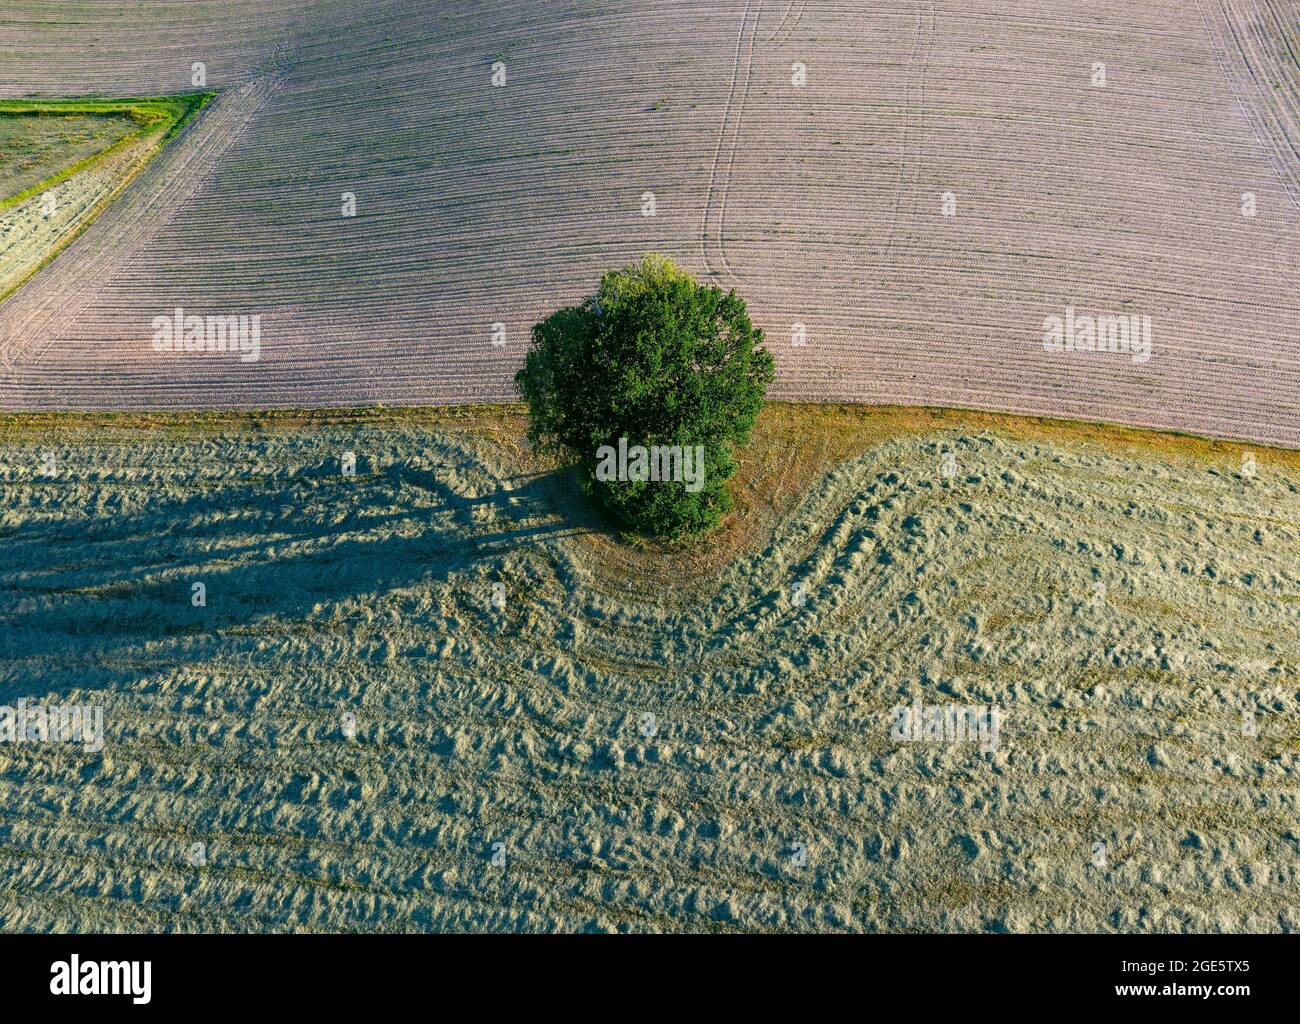 Drone immagine, paesaggio agricolo, singolo albero deciduo getta una lunga ombra sui campi, Innviertel, alta Austria, Austria, Europa Foto Stock